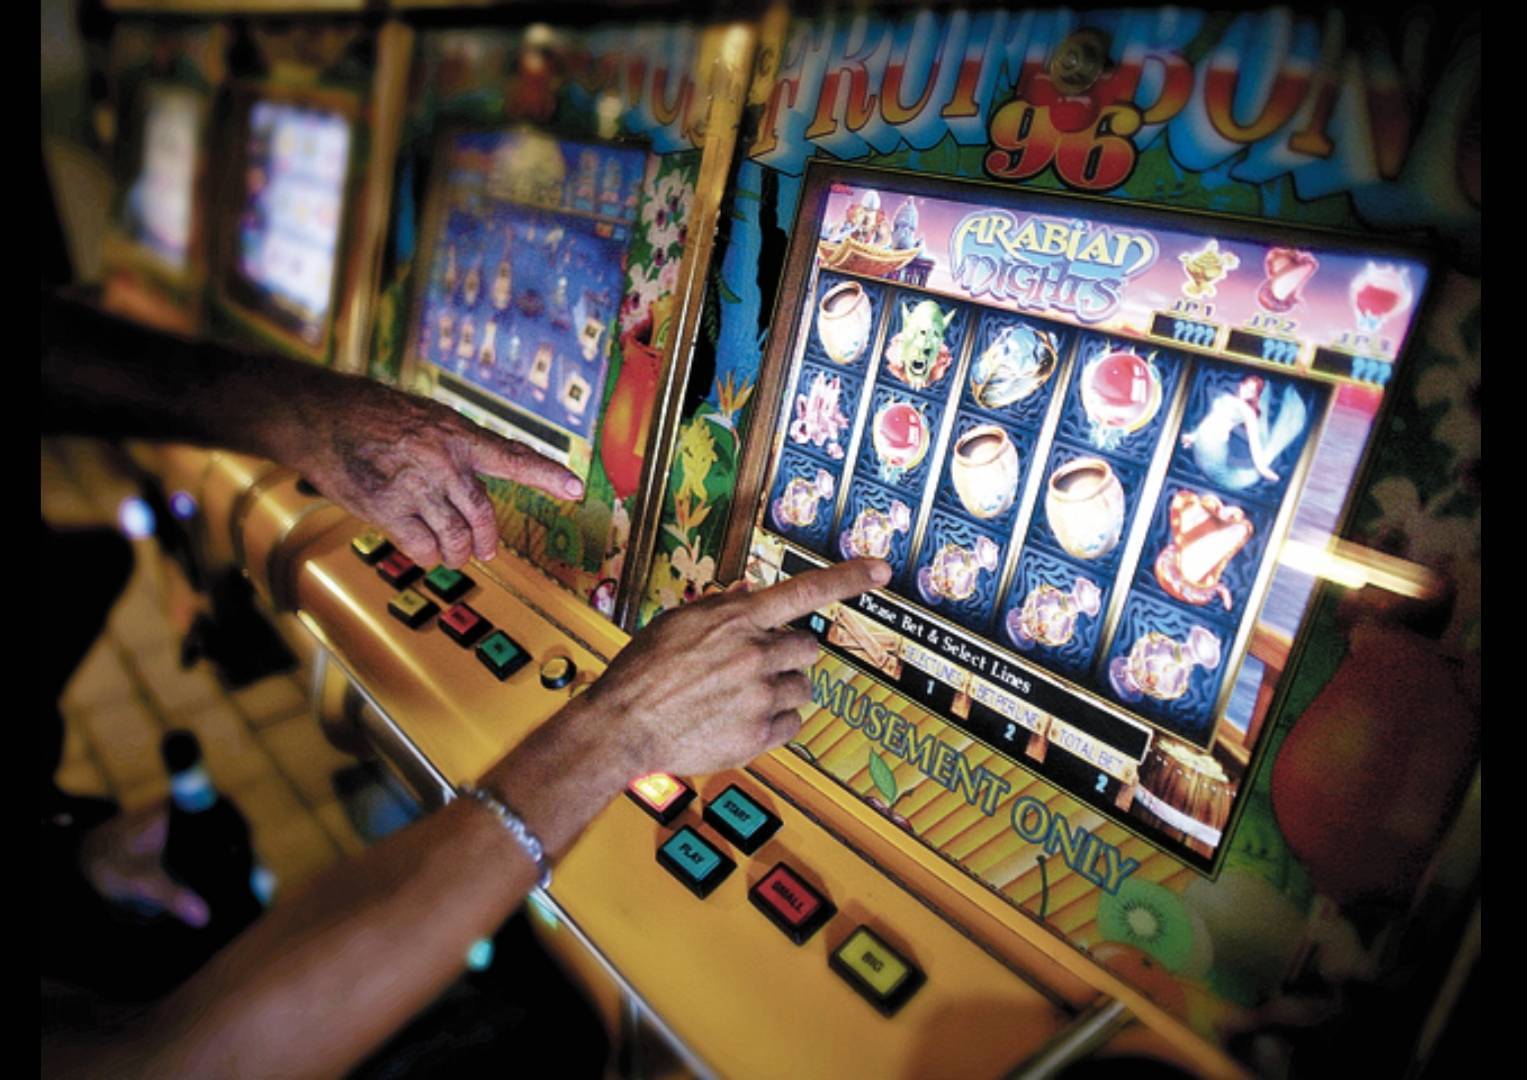 Ce impozite trebuie să plătească pasionații de jocuri de noroc, începând cu 2022